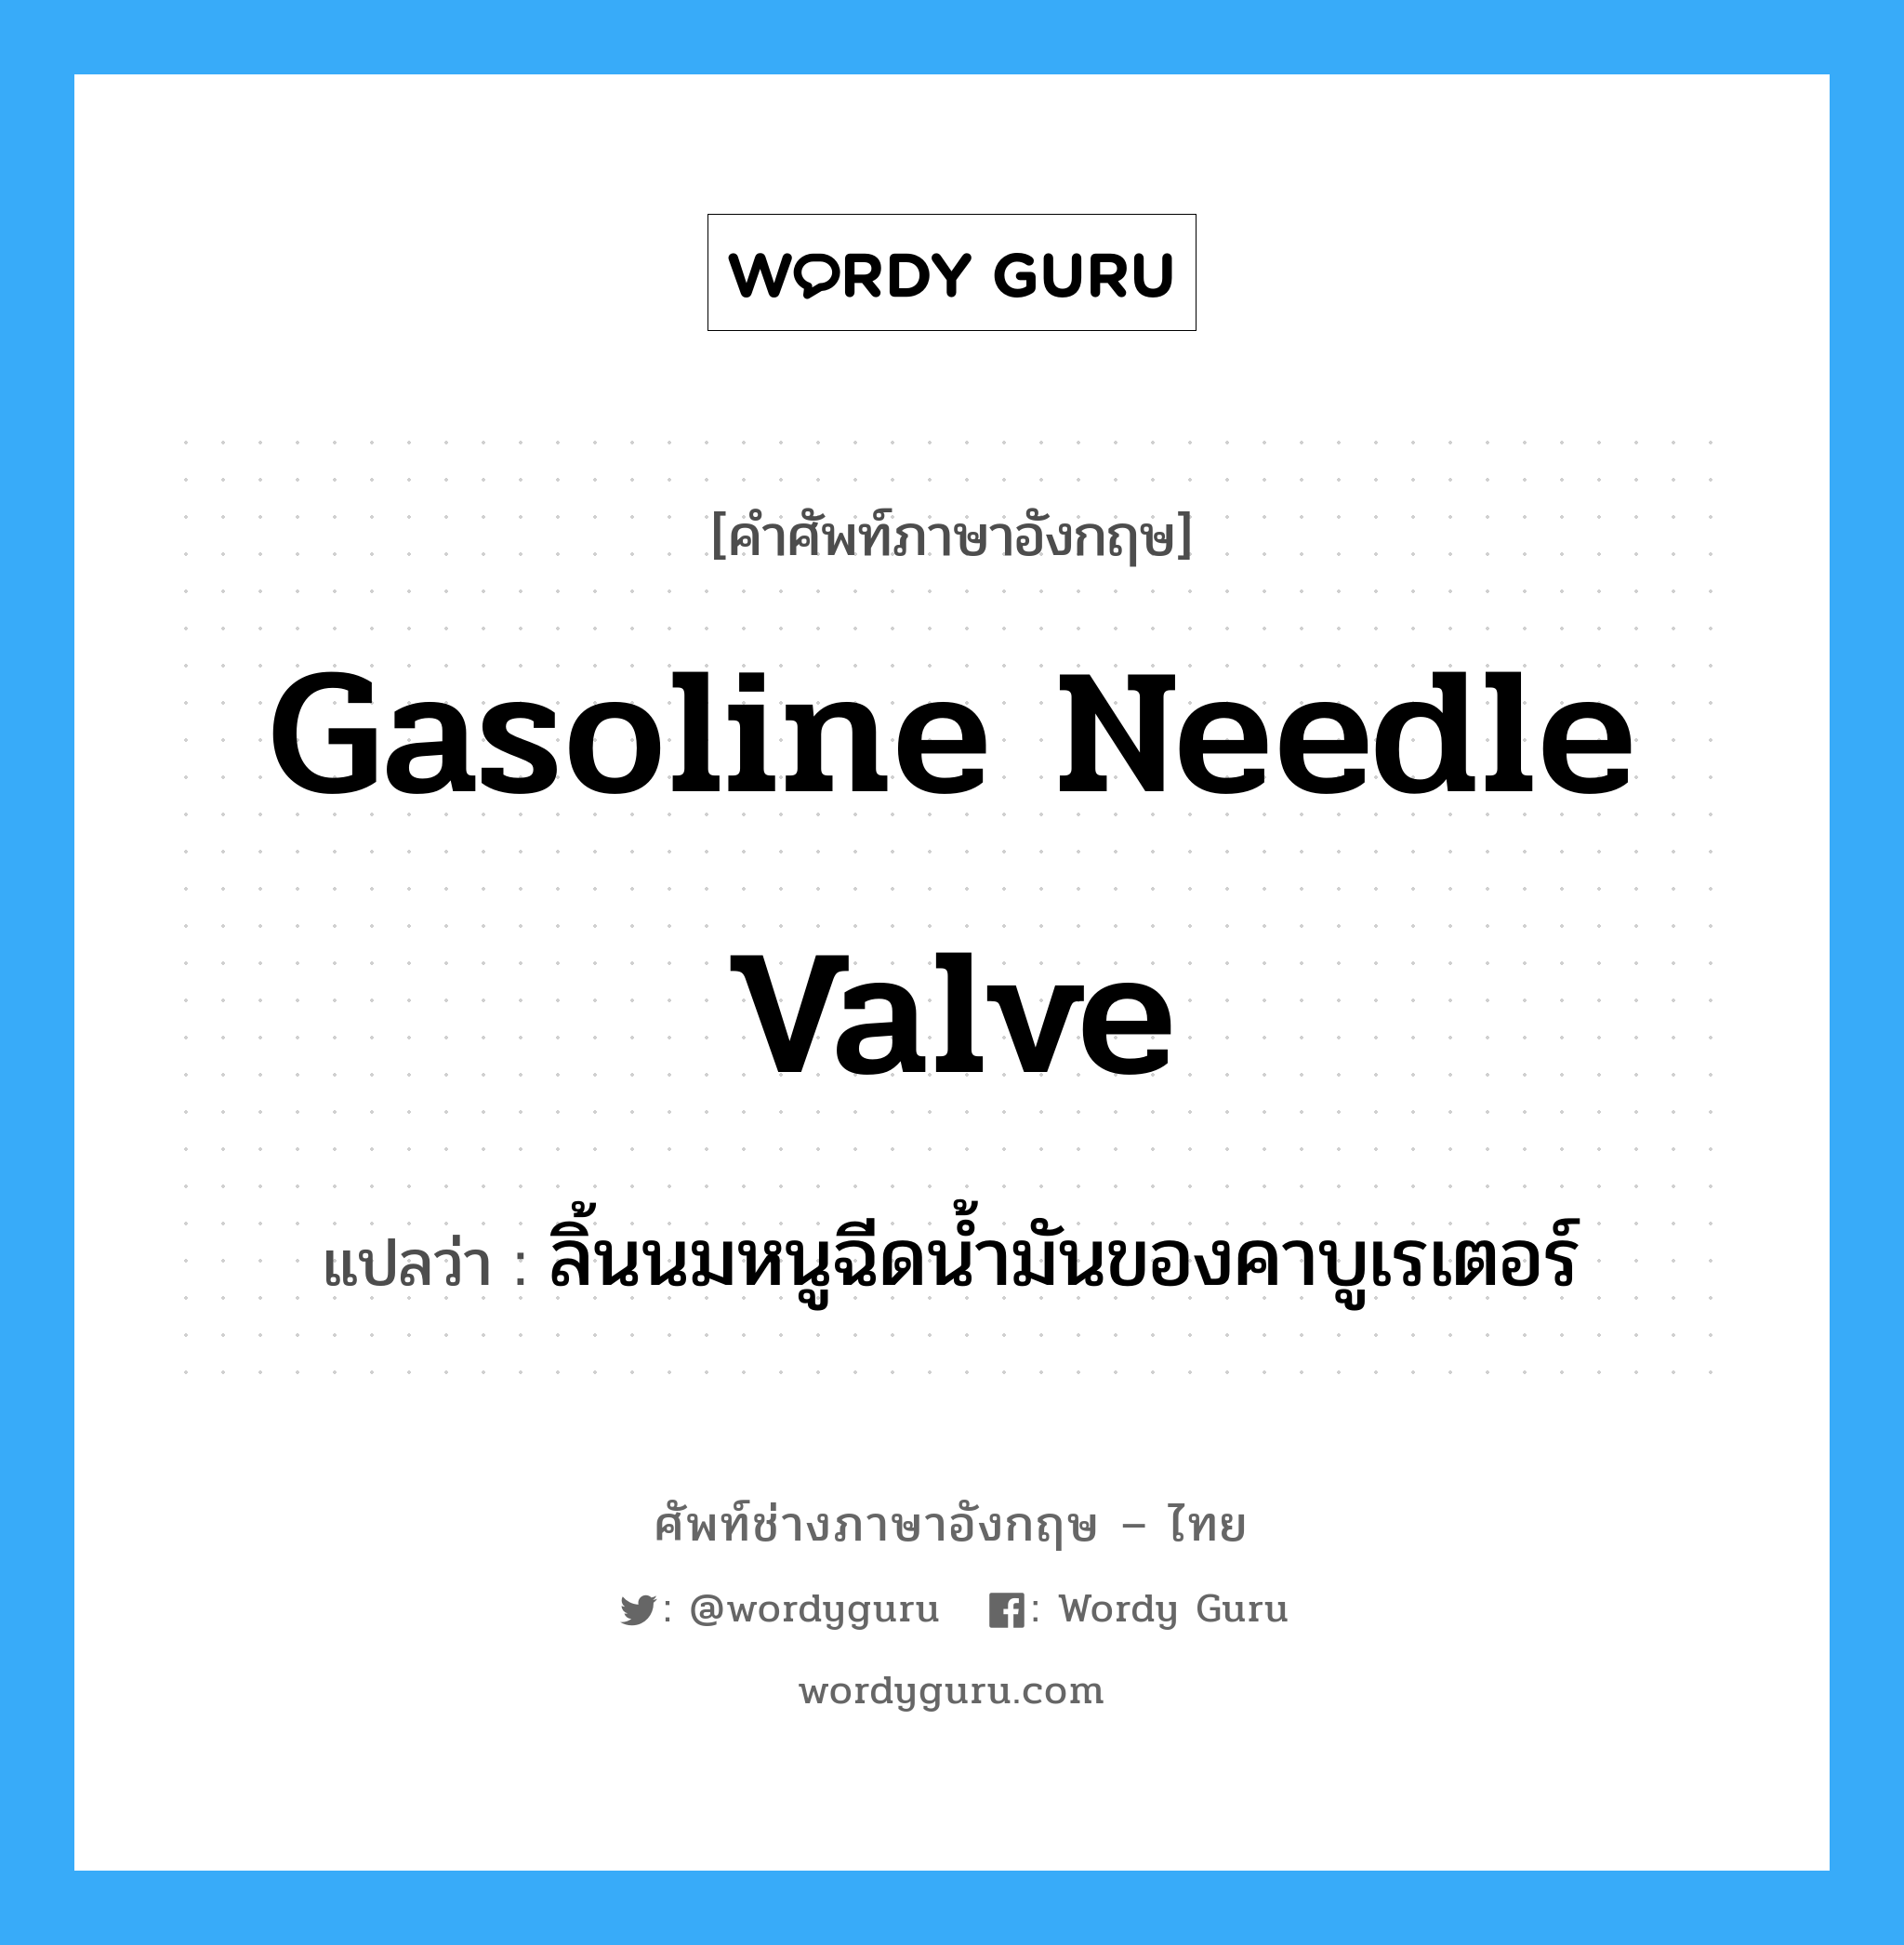 gasoline needle valve แปลว่า?, คำศัพท์ช่างภาษาอังกฤษ - ไทย gasoline needle valve คำศัพท์ภาษาอังกฤษ gasoline needle valve แปลว่า ลิ้นนมหนูฉีดน้ำมันของคาบูเรเตอร์